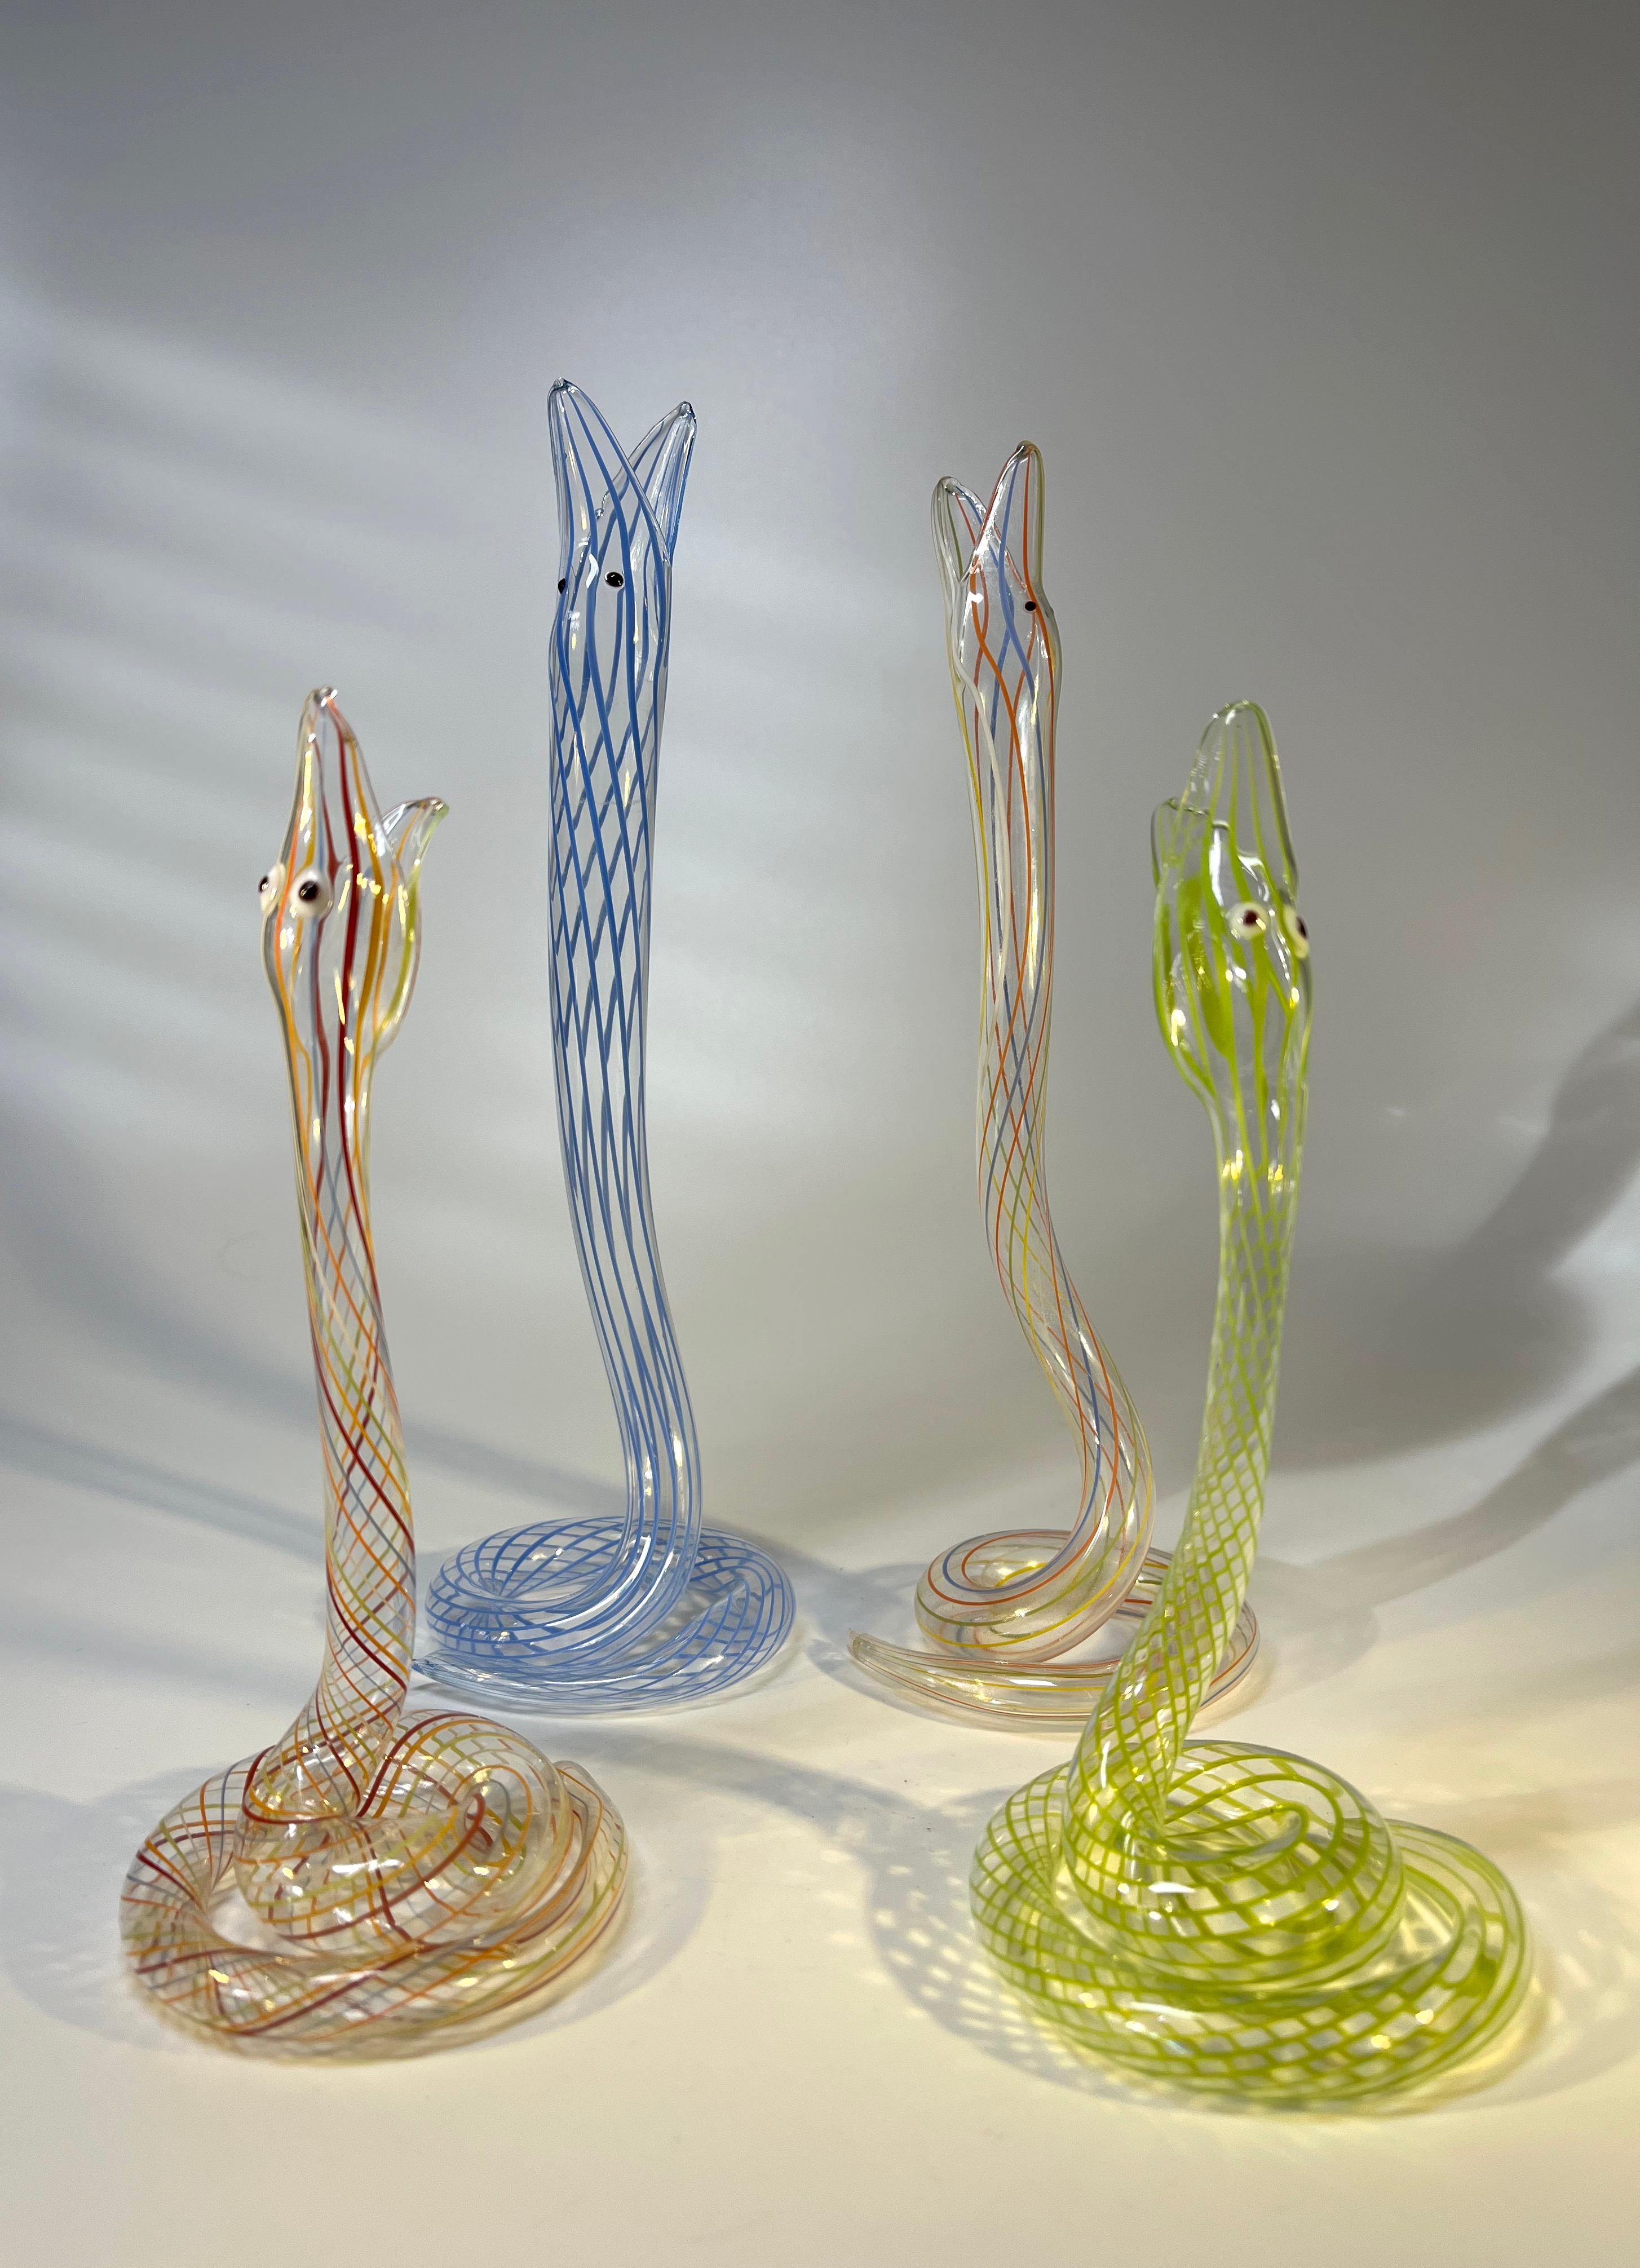 Austrian Slither of Whimsical Bimini Glass Lampwork Art Deco Snake Vases, c1920-1930 For Sale